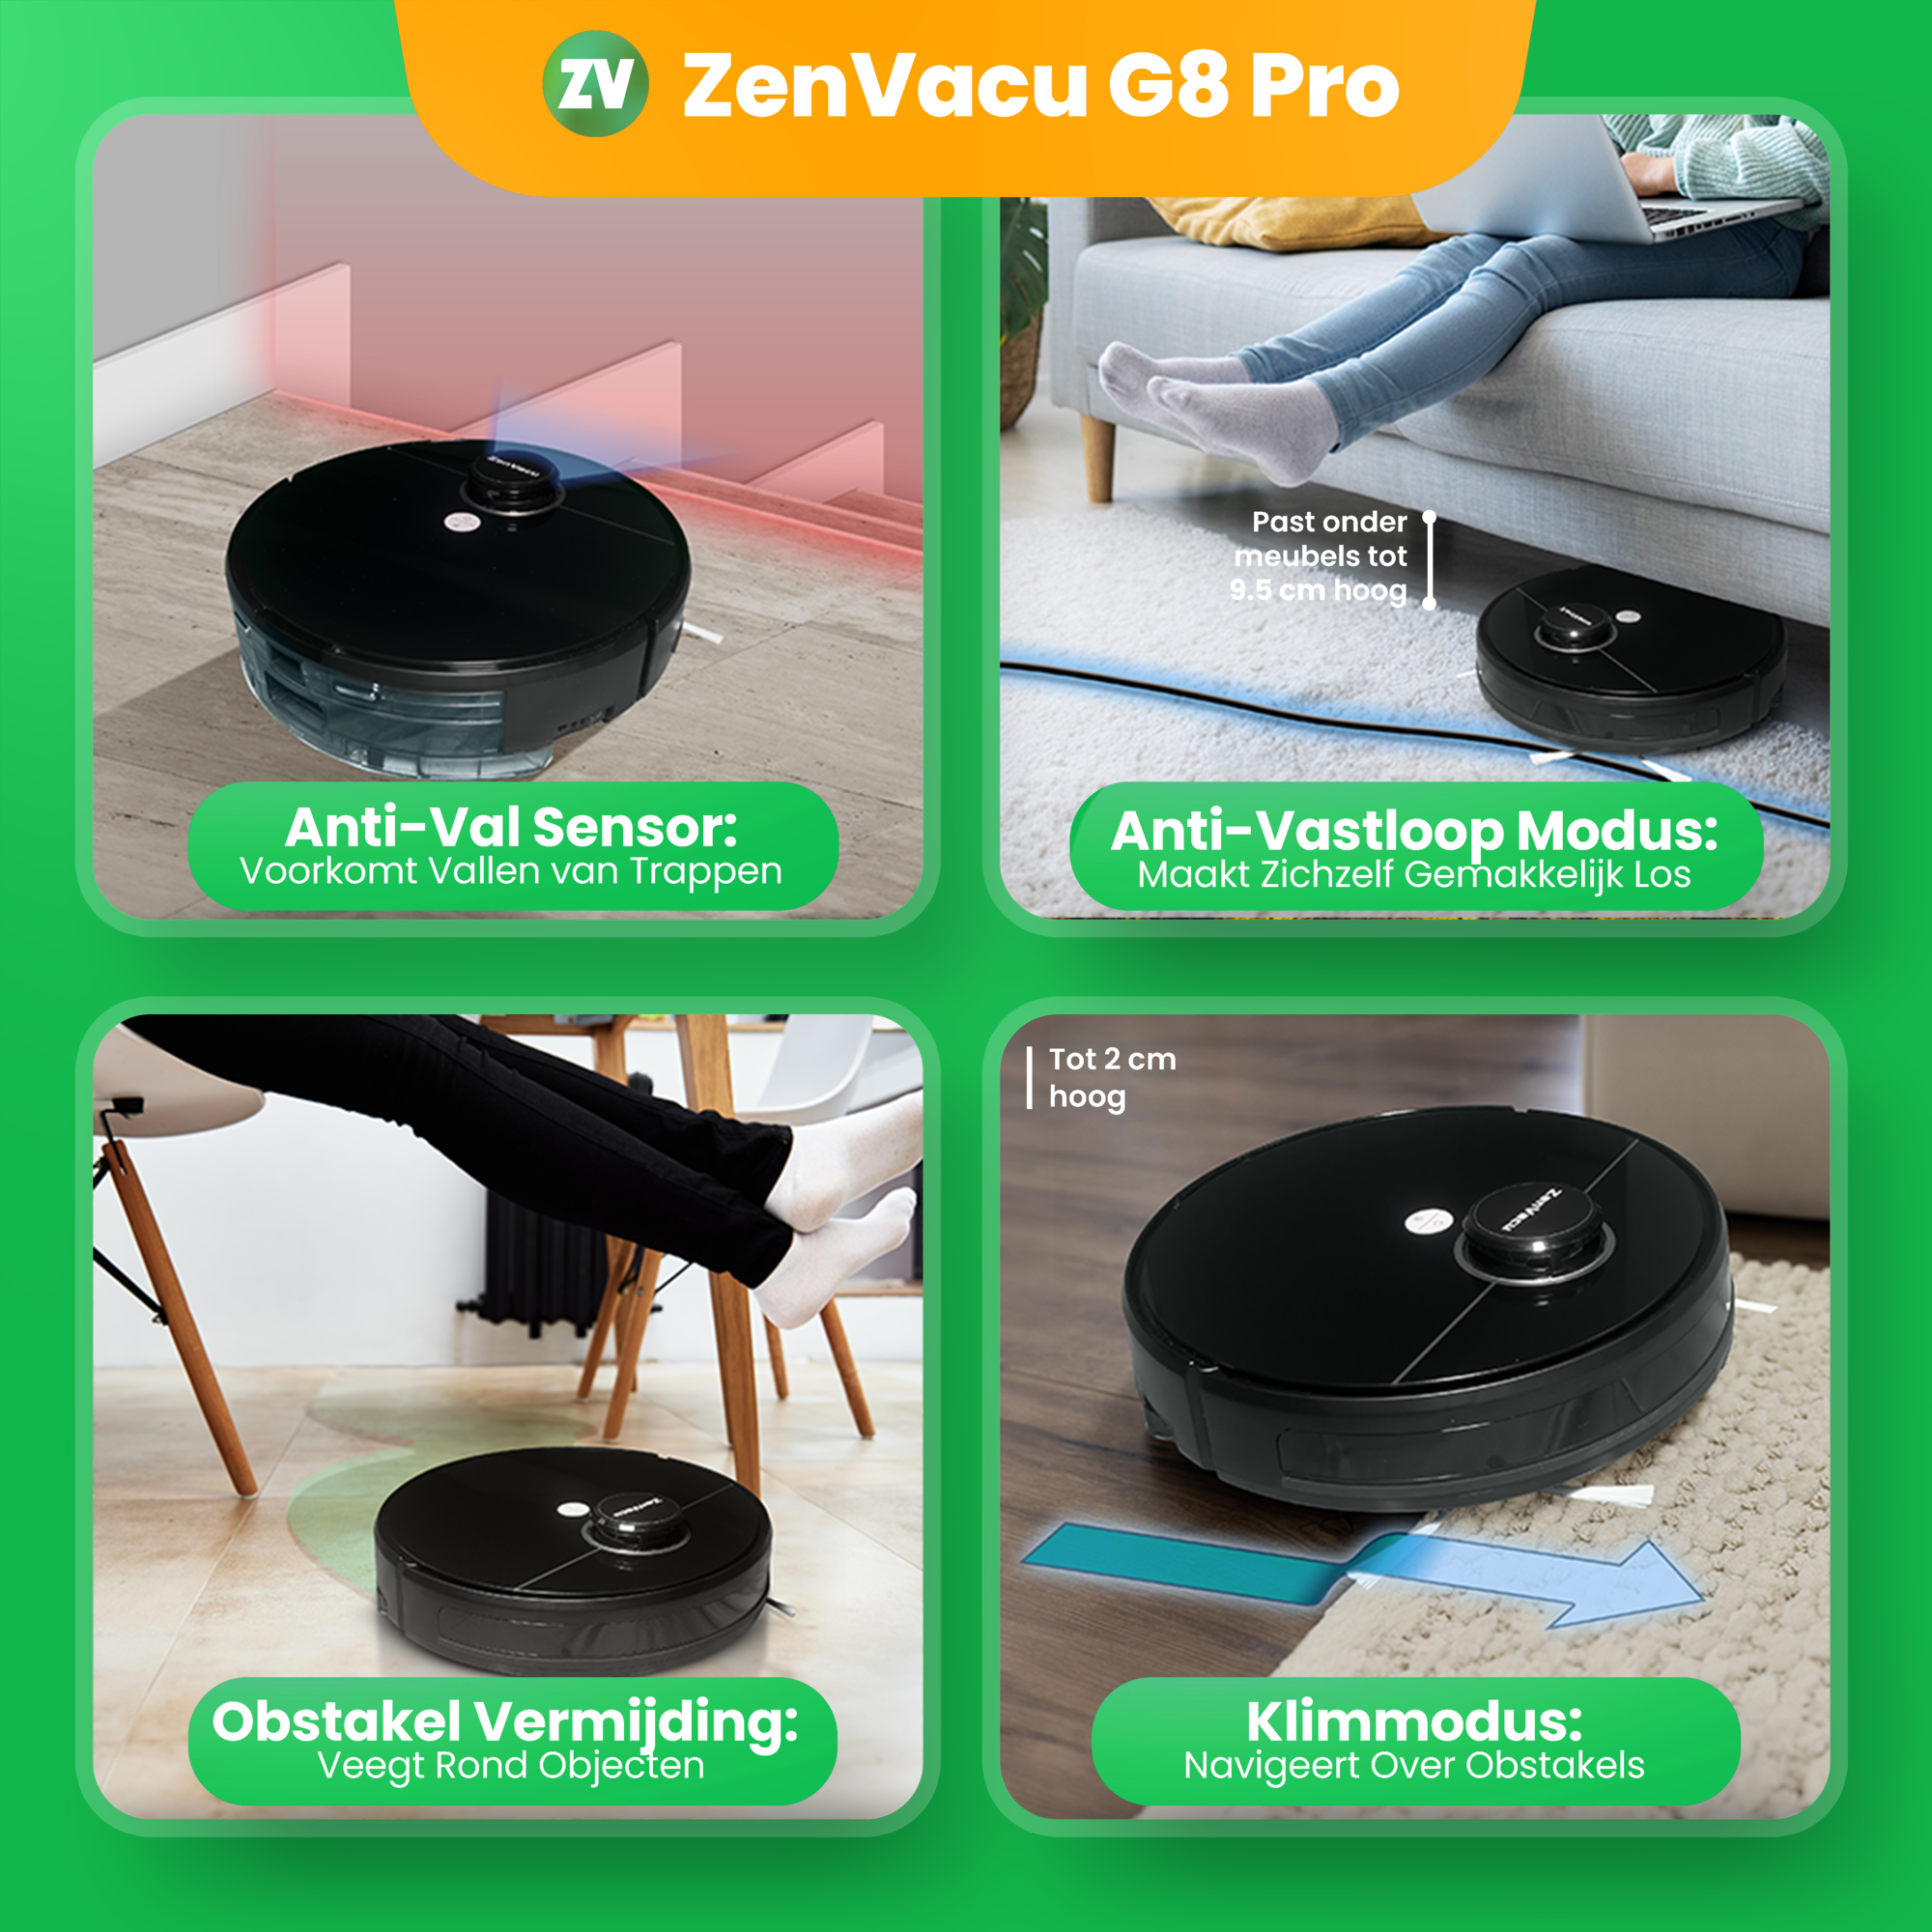 ZenVacu G8 Pro, Veiligheidssystemen, Anti-Val Sensor, Anti-Vastloop Modus, Onstakel Vermijding en Klimmodus